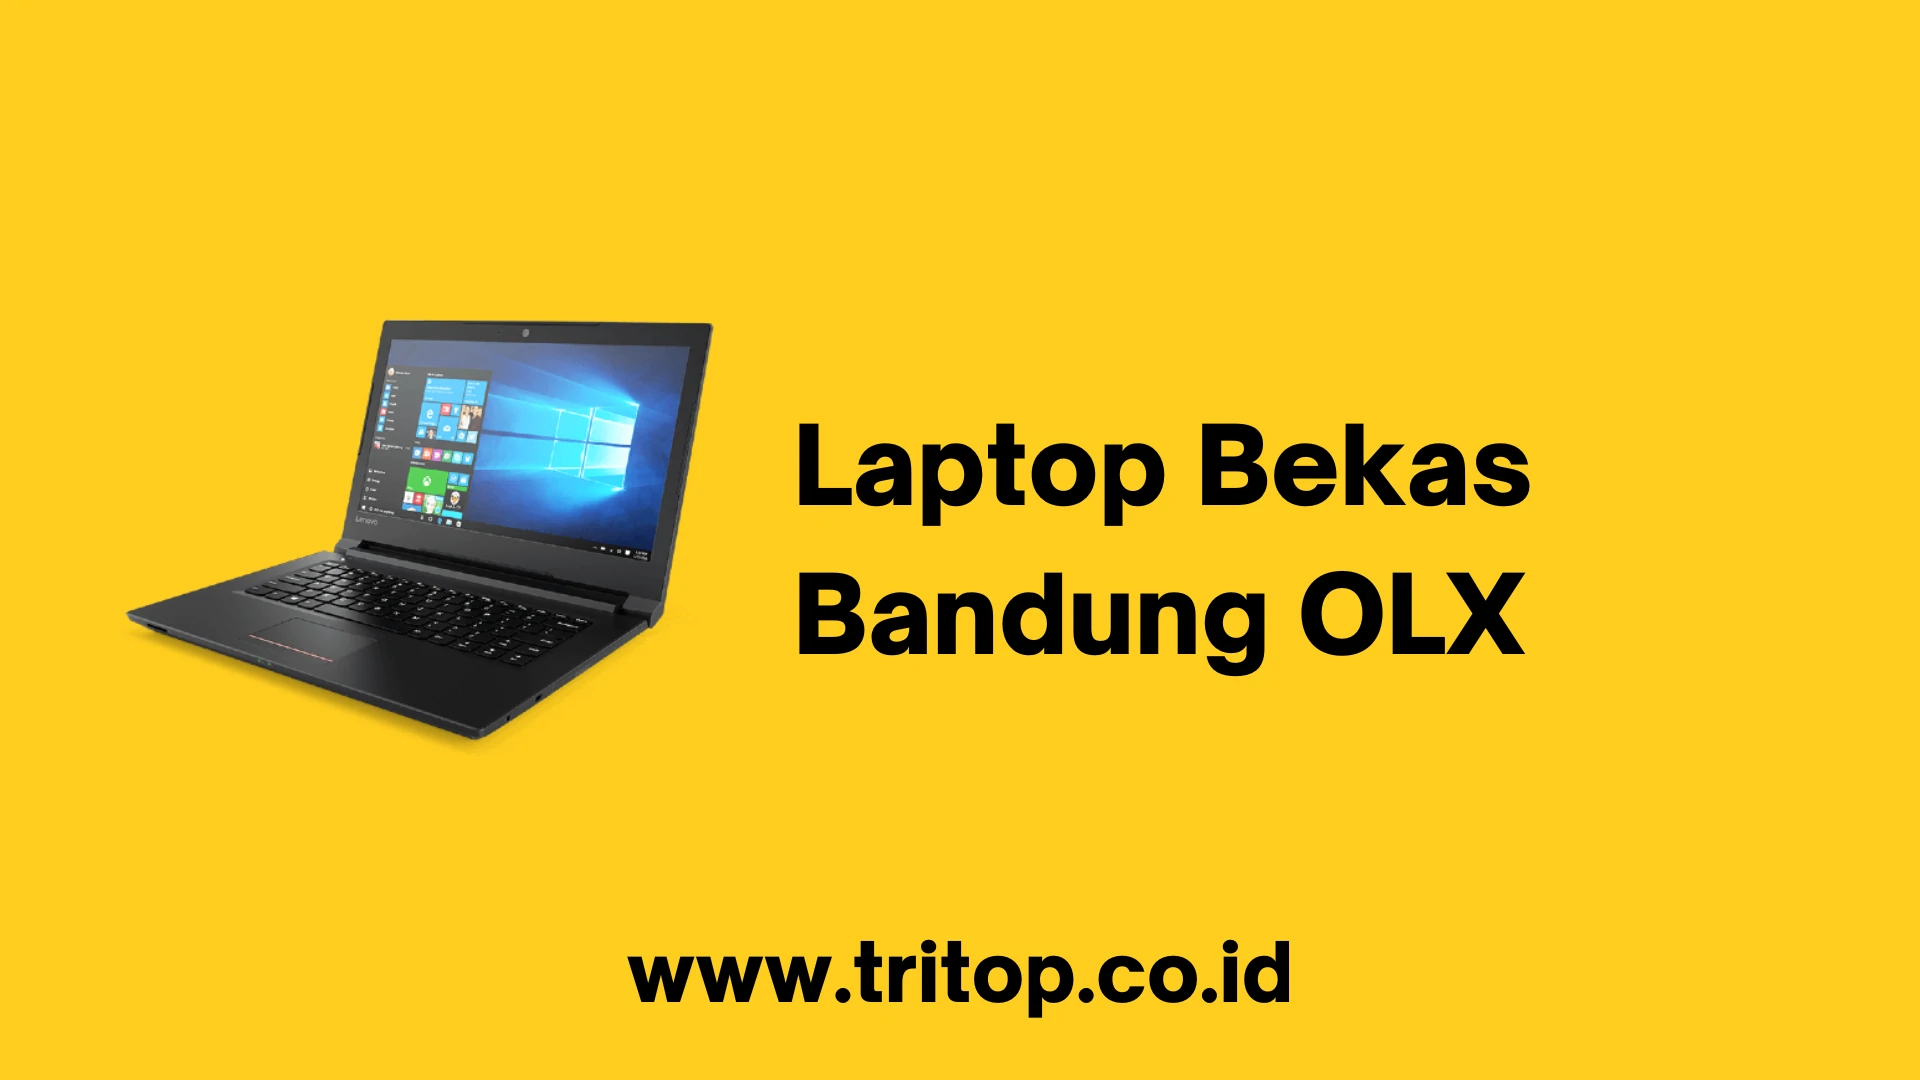 Laptop Bekas Bandung OLX